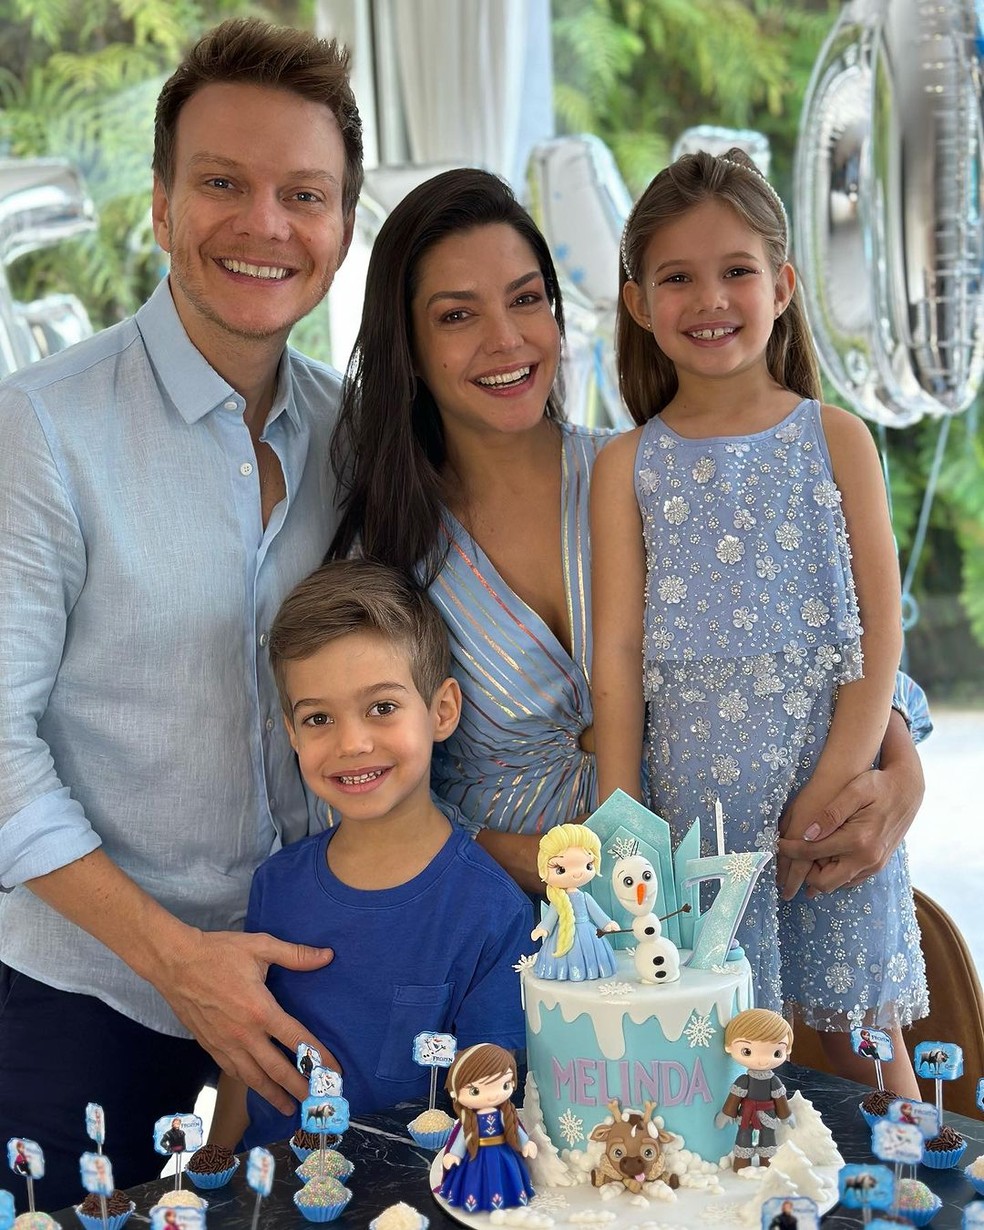 Thais Fersoza elogiou a filha, Melinda, em seu aniversário de 7 anos — Foto: Reprodução Instagram